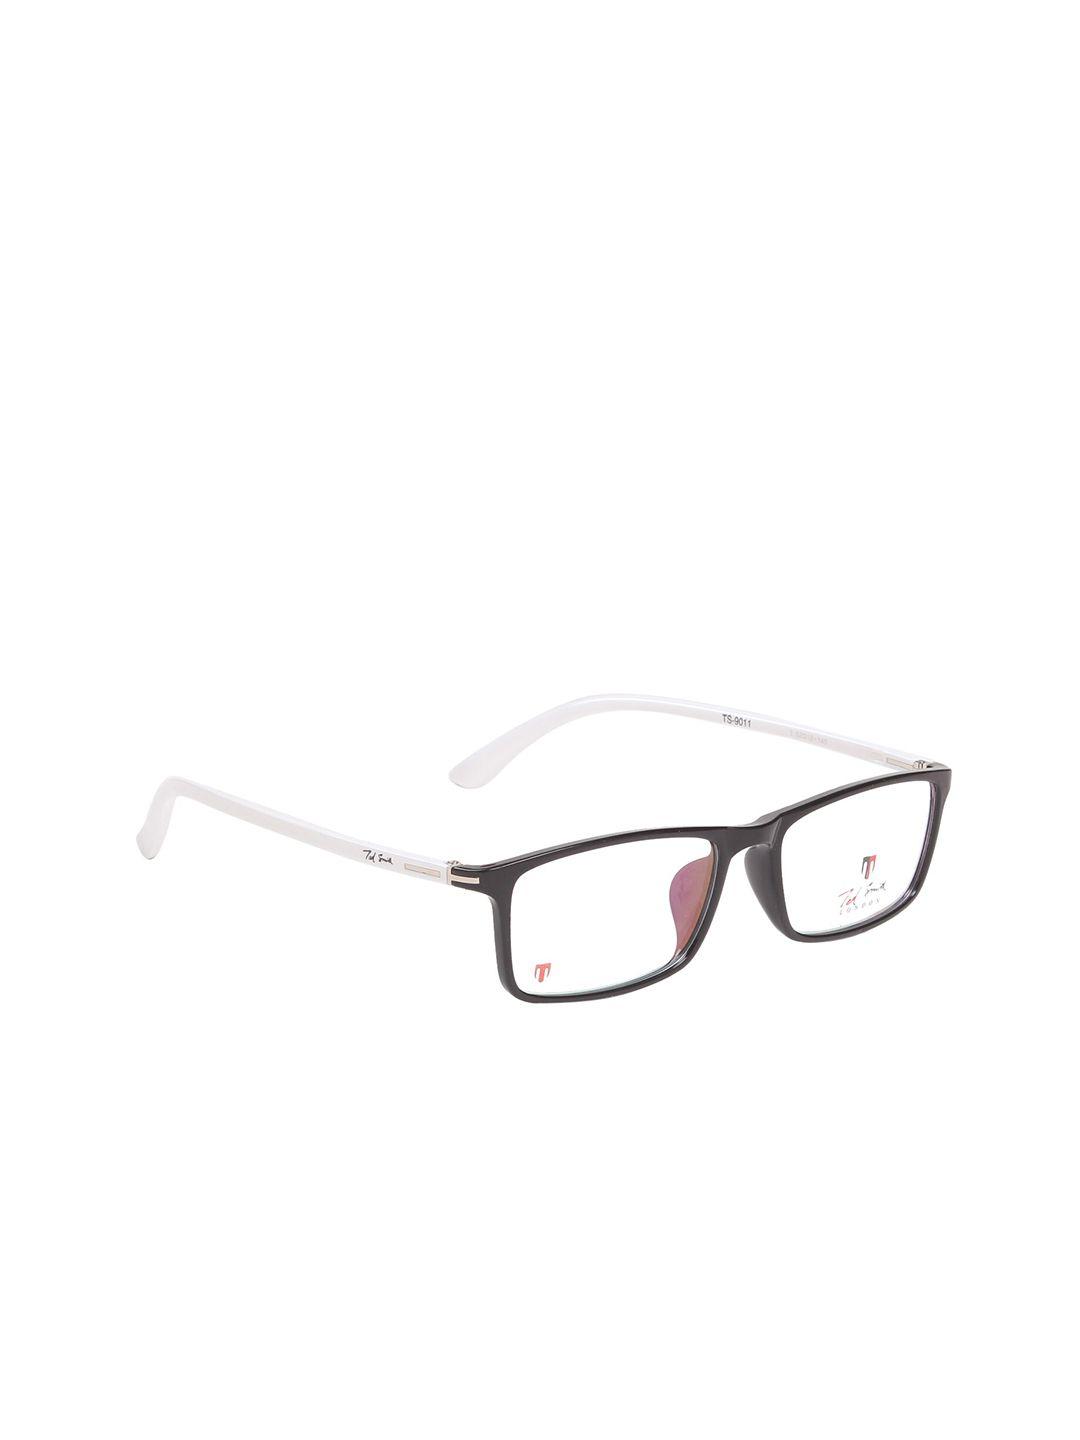 ted smith unisex black & white full rim rectangle frames eyeglasses